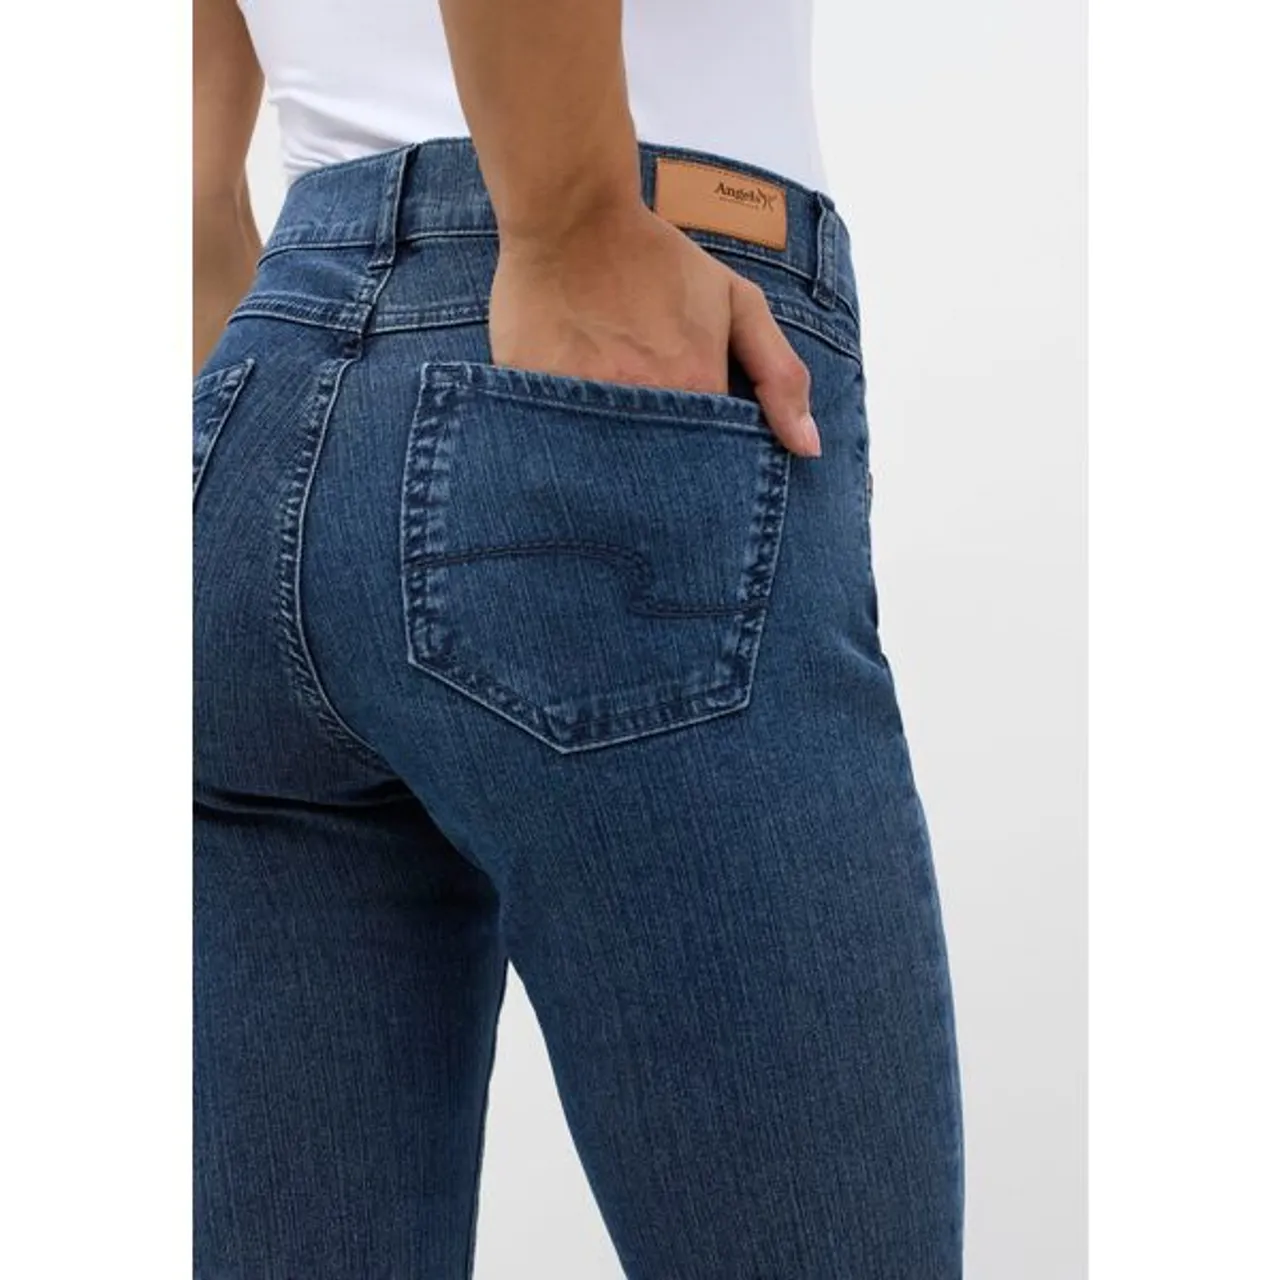 Slim-fit-Jeans ANGELS "CICI" Gr. 46, Länge 28, blau (blue) Damen Jeans Röhrenjeans